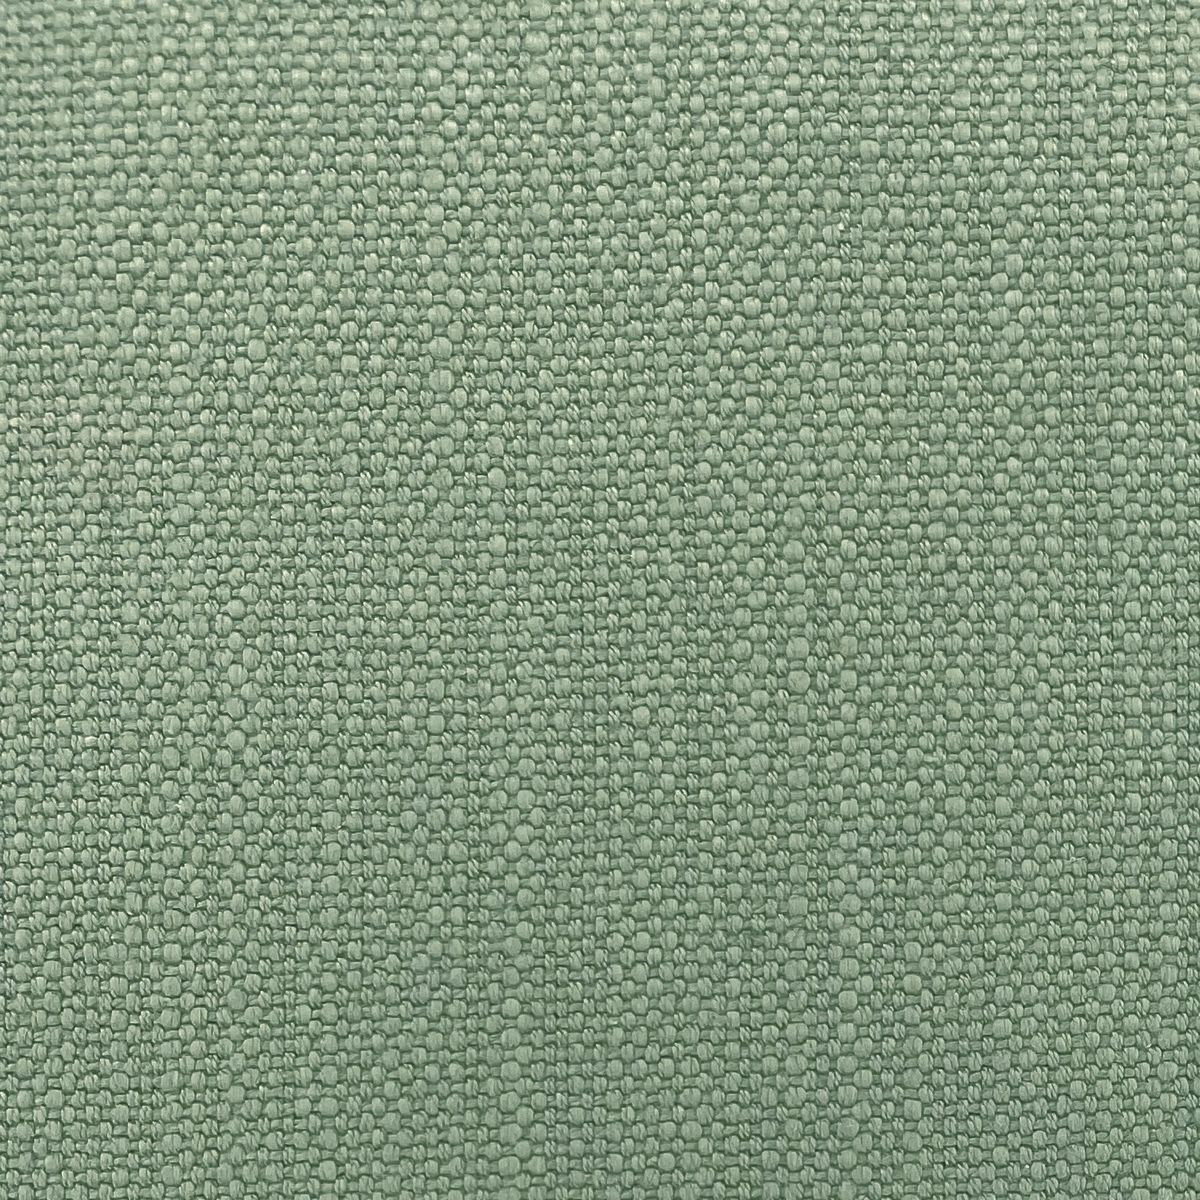 Pimlico Granite Green Fabric by Chatham Glyn